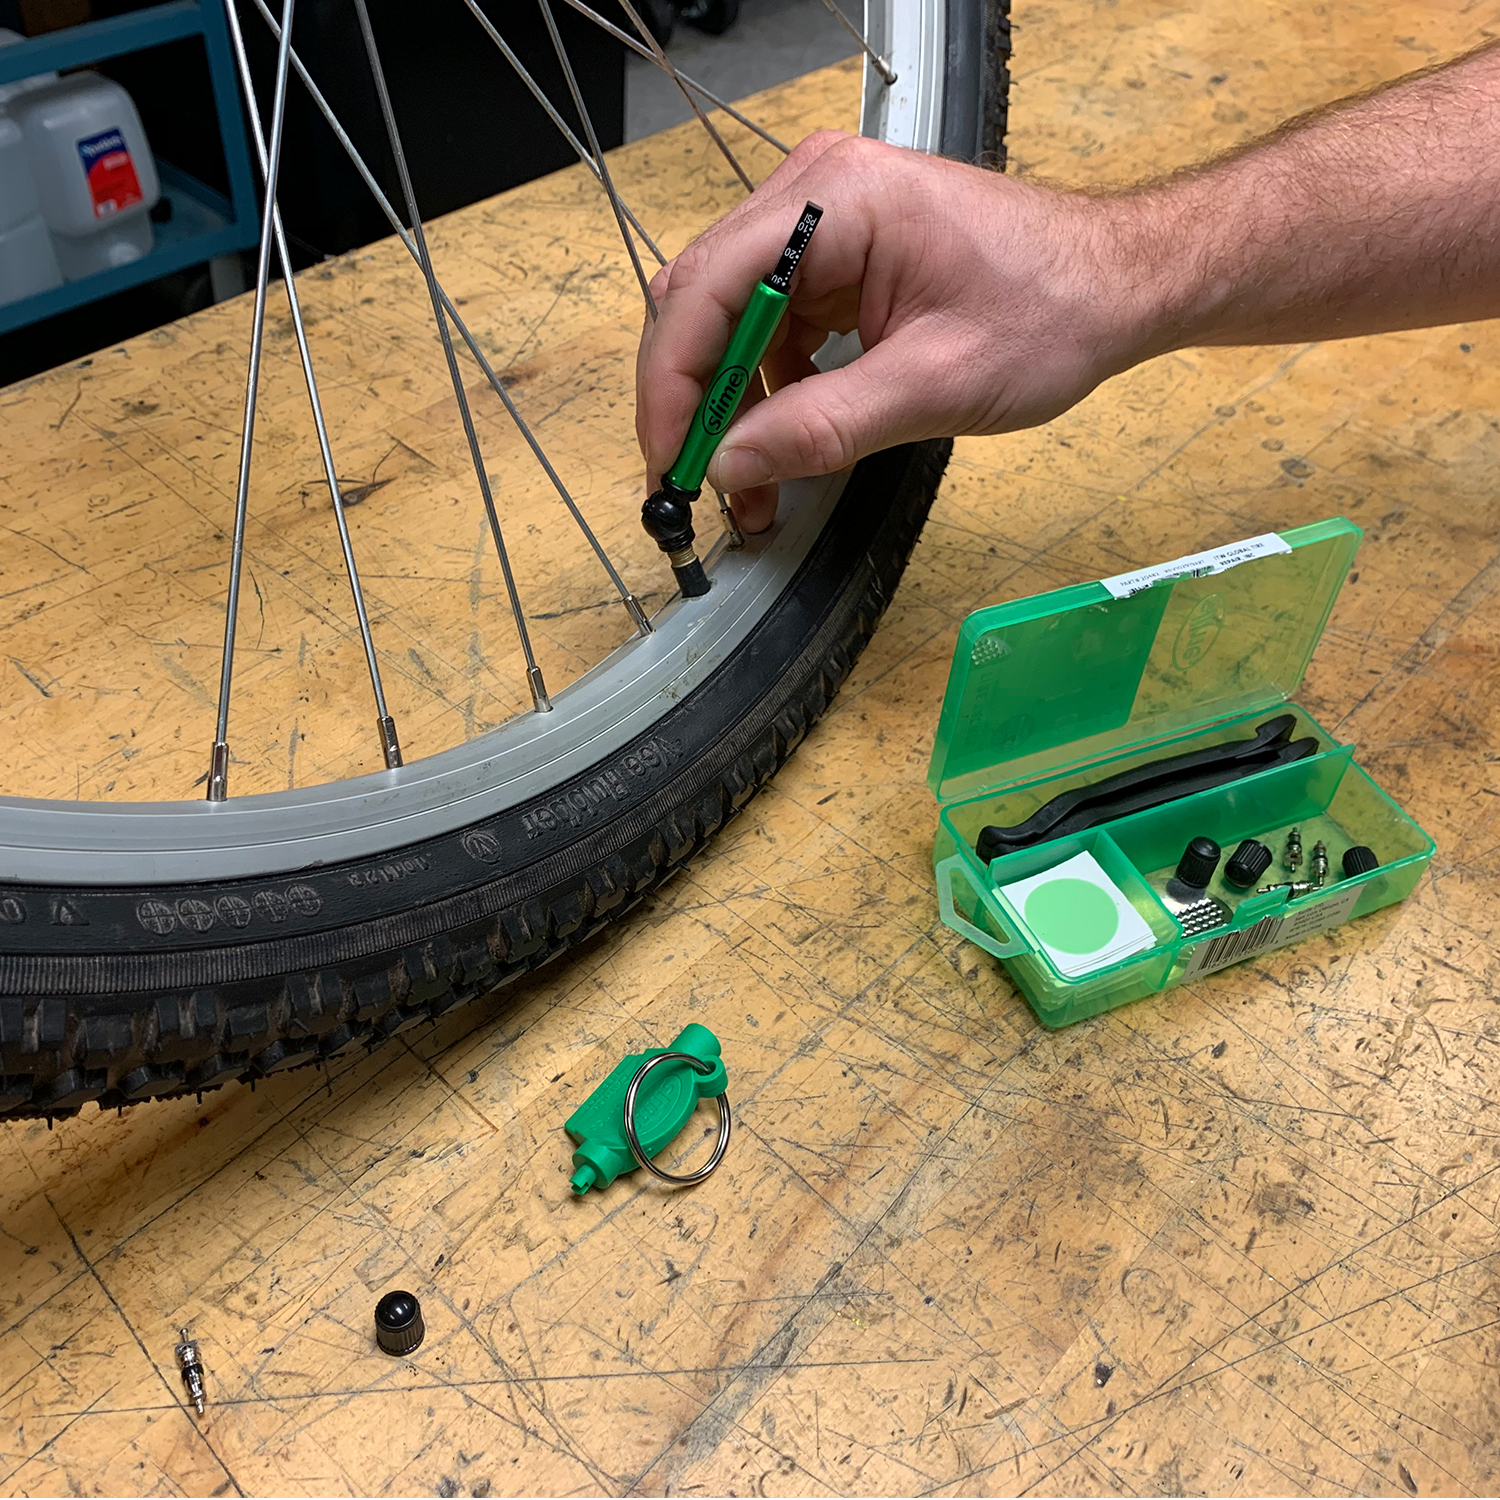 Slime Bike Tube Repair Kit - 20482